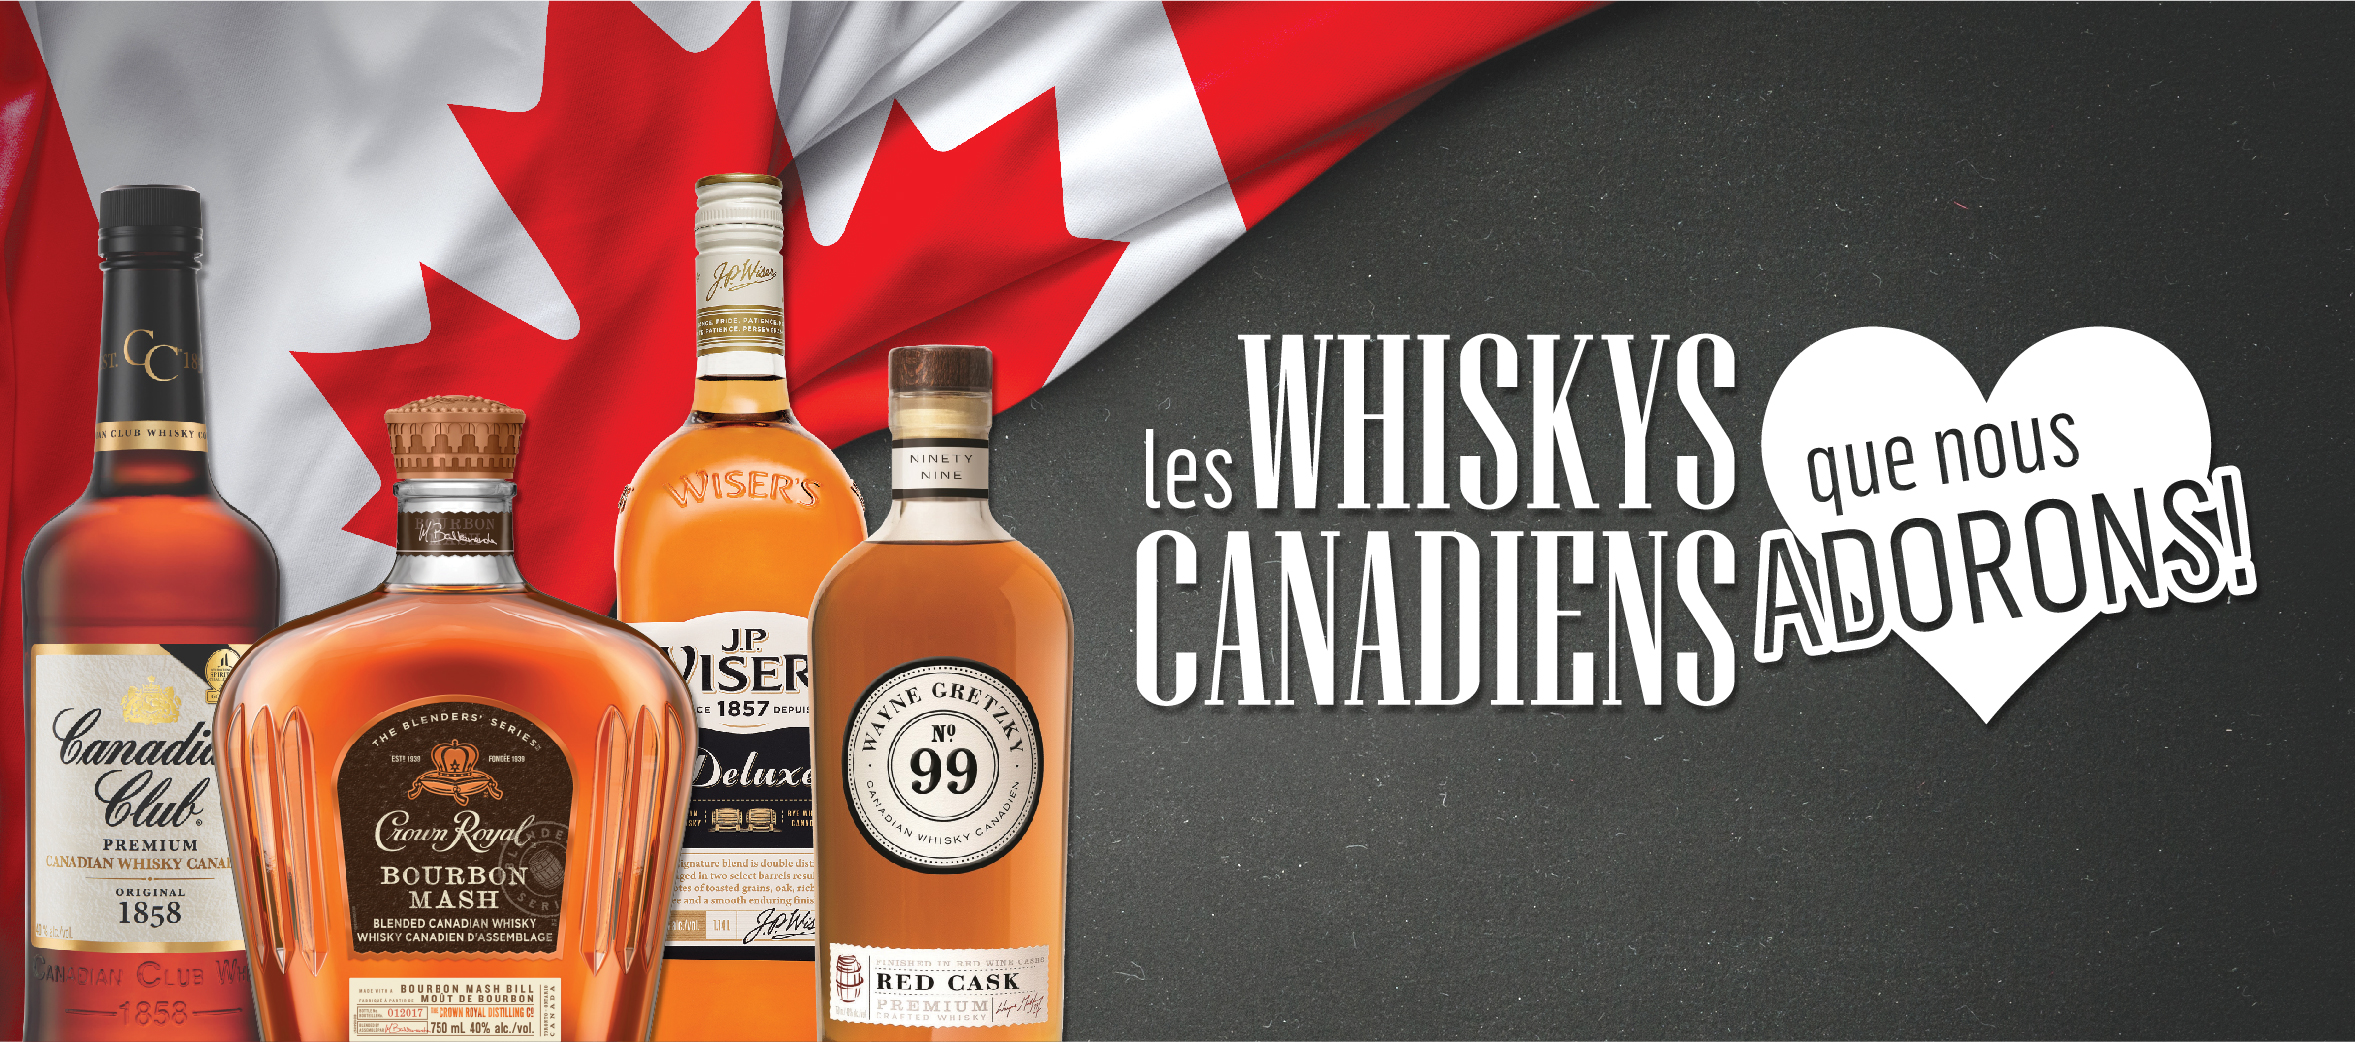 Les Whiskies Canadiens Que Nous Adorons